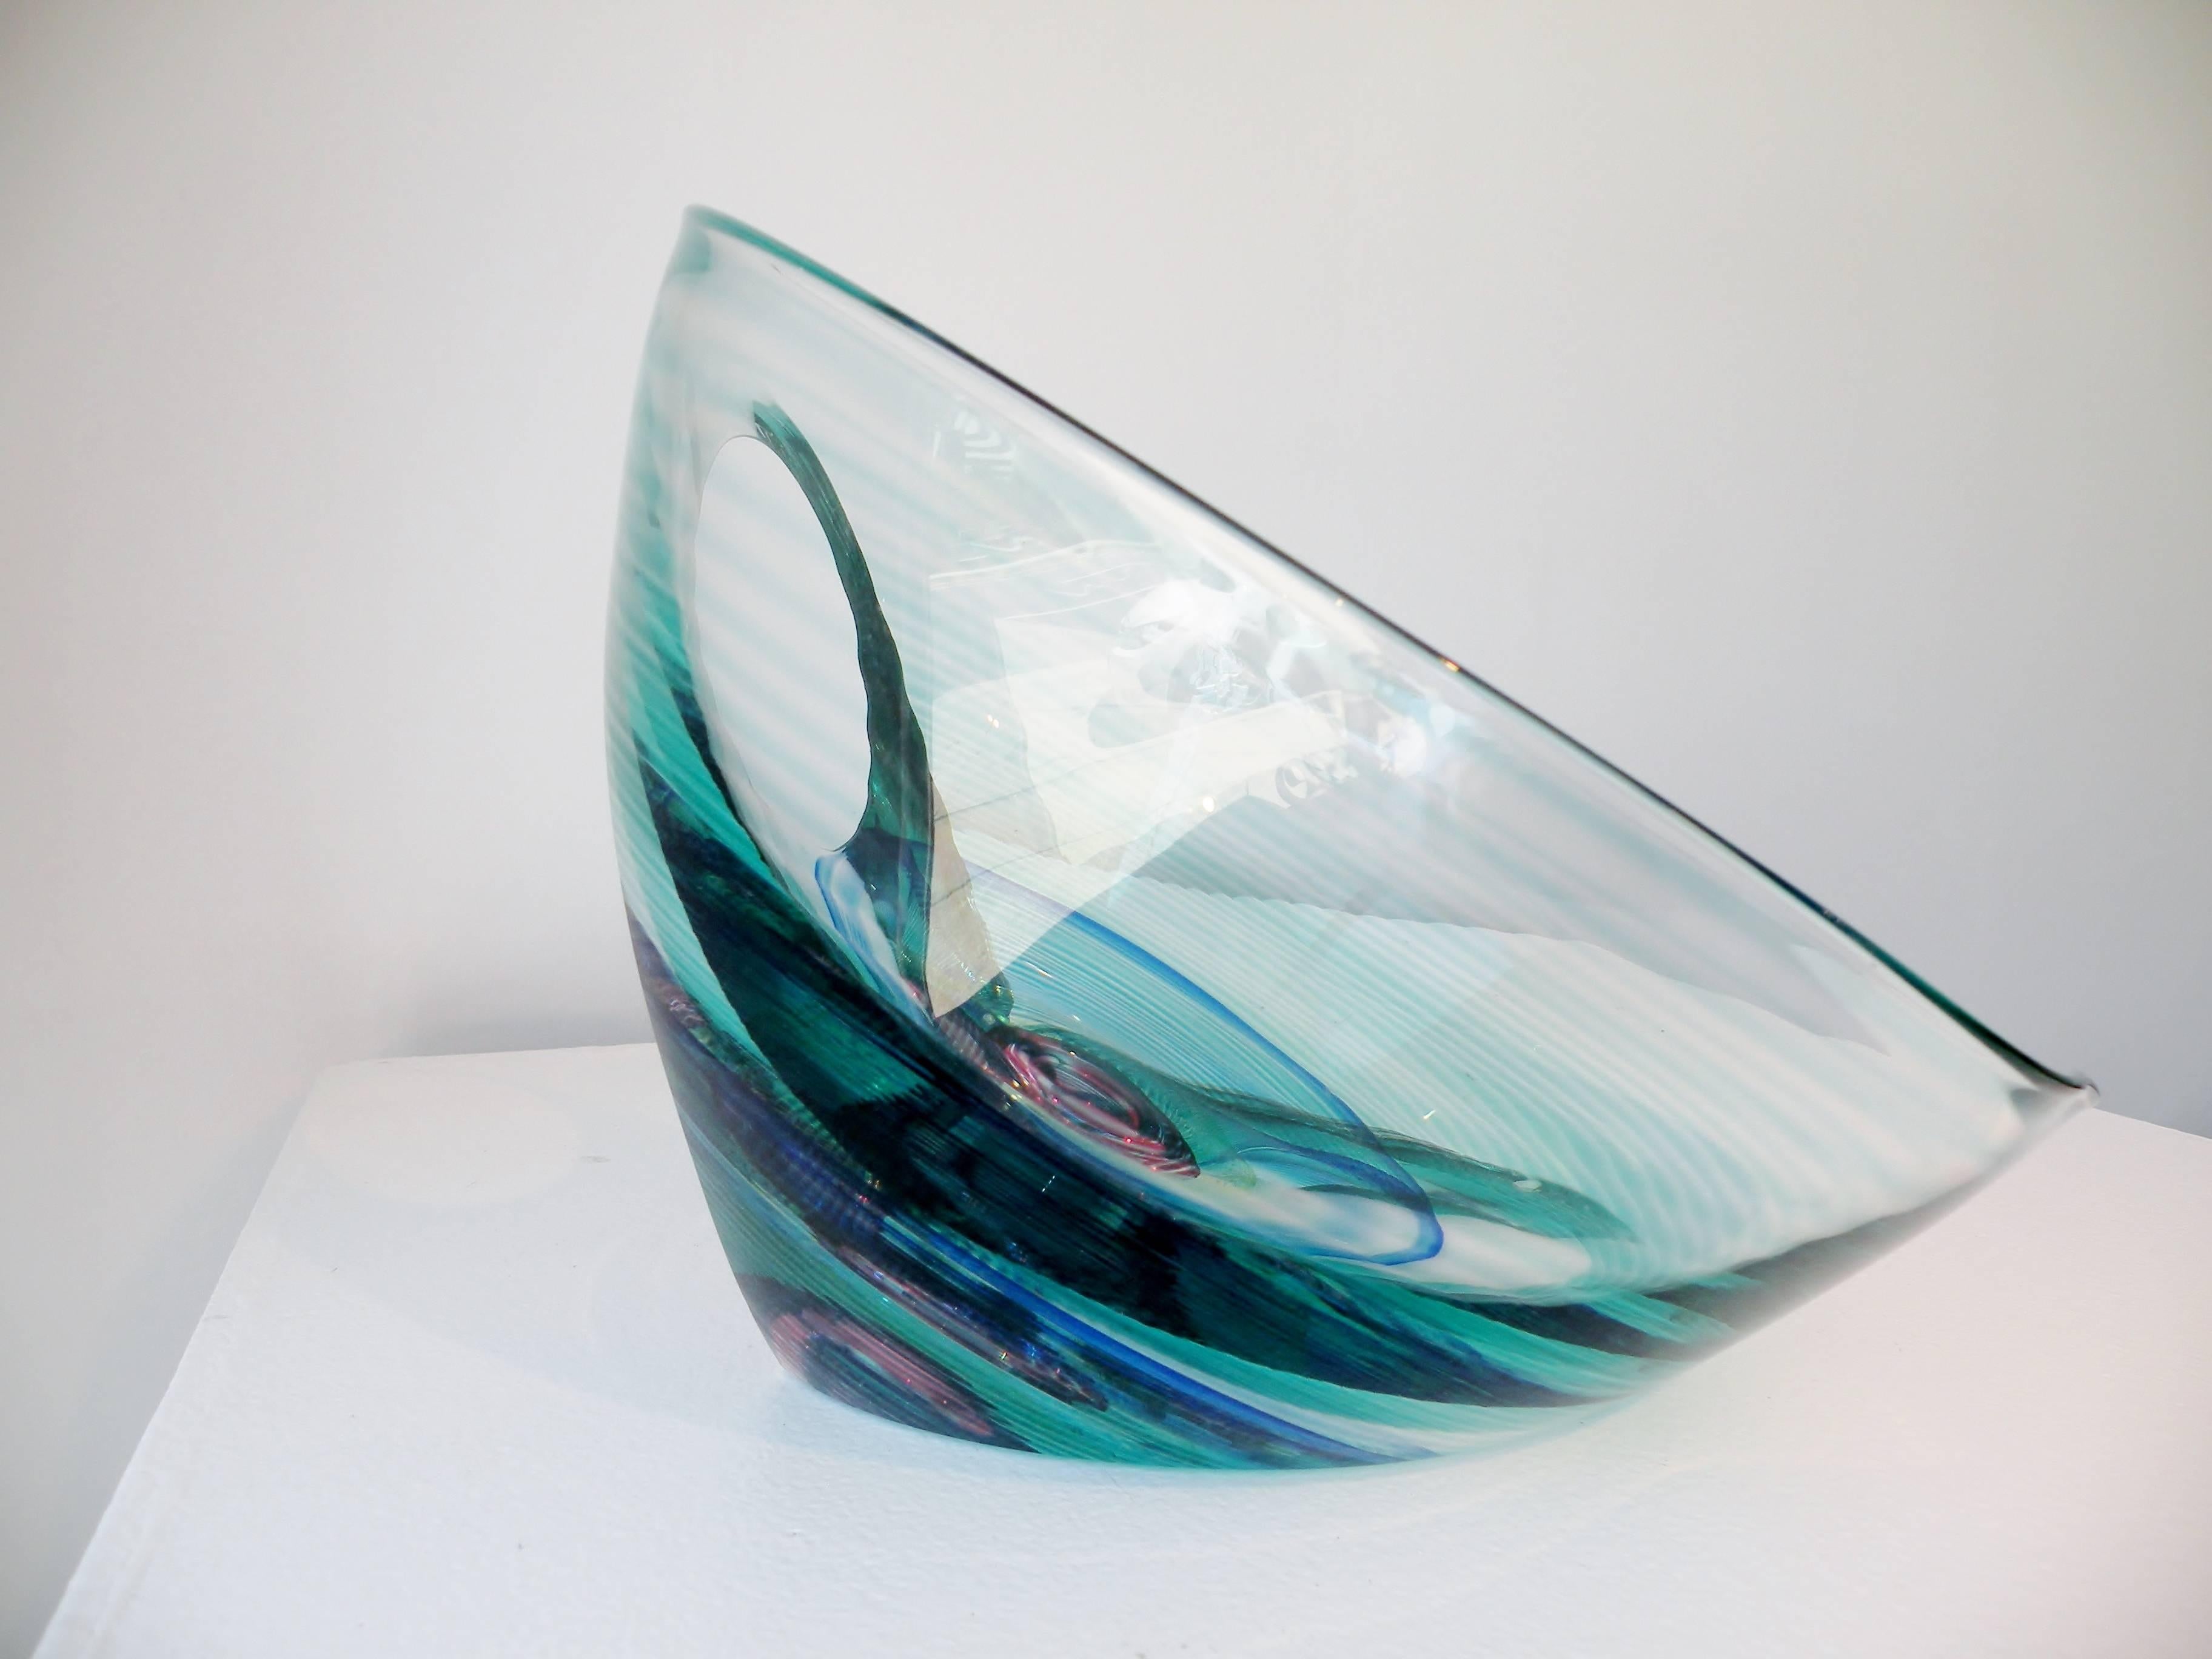 Modern Kit Karbler & Rudenko Blake Street Contemporary American Art Glass Sculpture